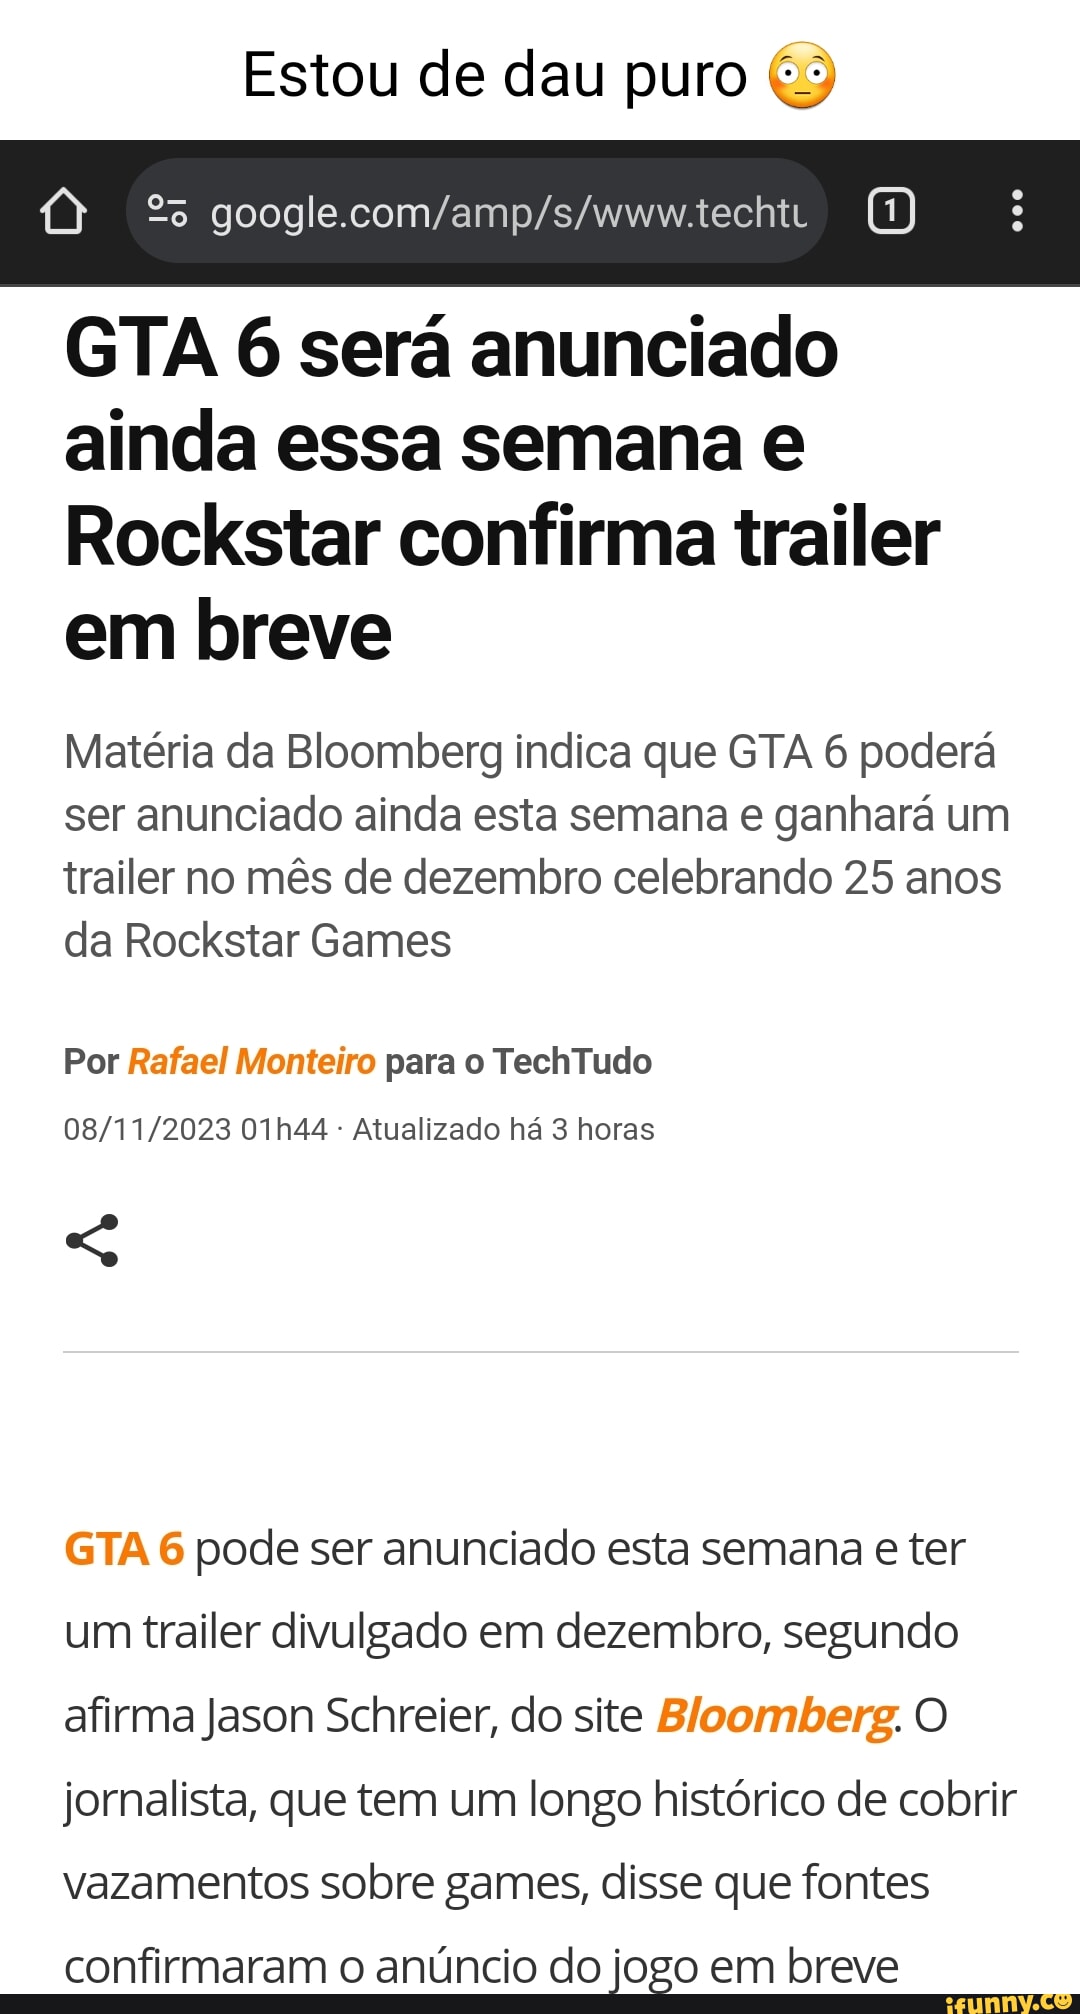 GTA 6 será anunciado ainda essa semana e Rockstar confirma trailer em breve